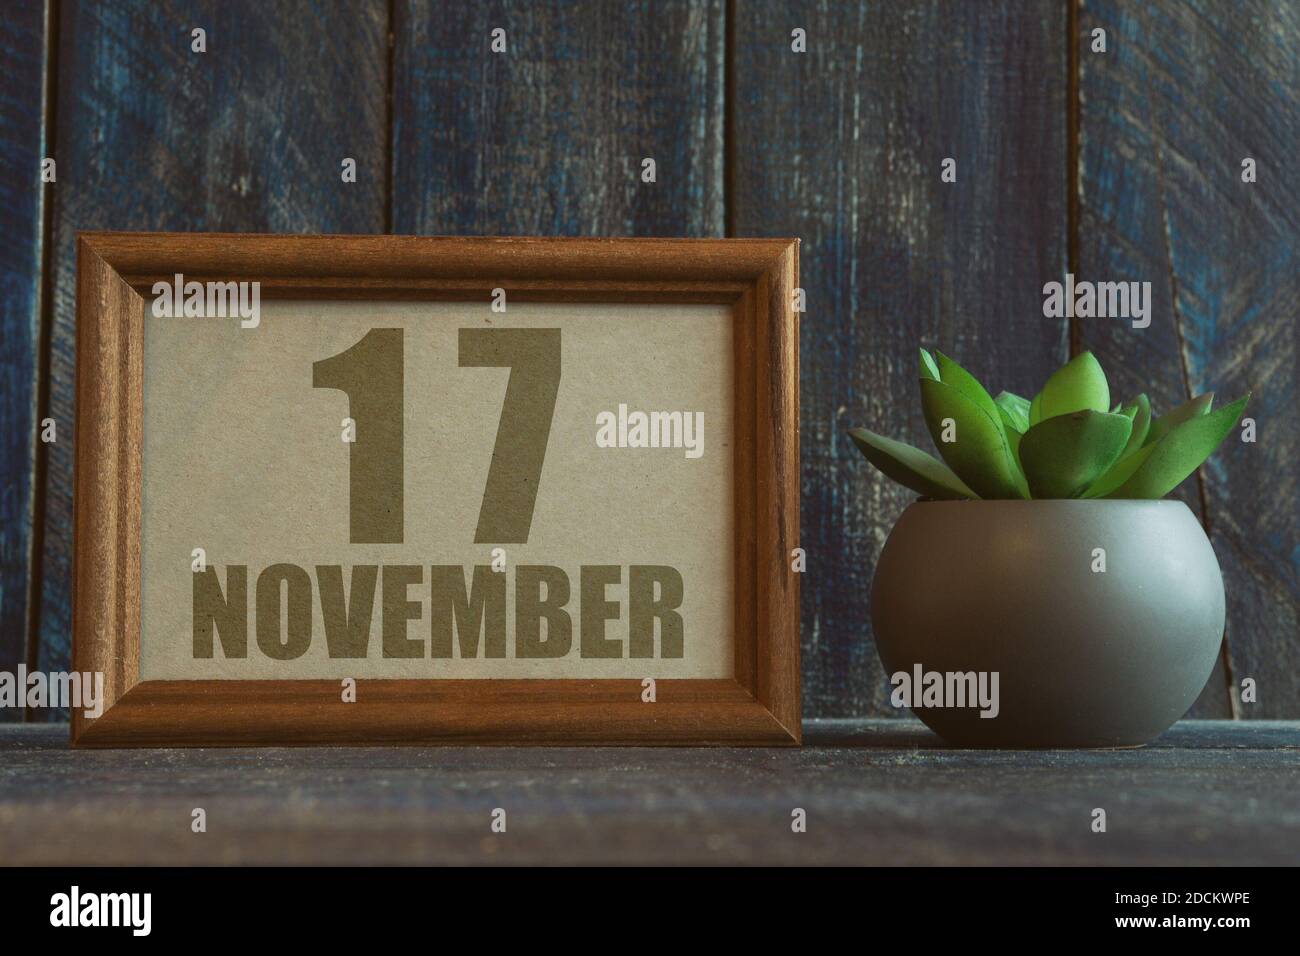 november 17th. Tag 17 des Monats, Datum im Rahmen neben Sukkulente auf Holzhintergrund Herbstmonat, Tag des Jahres Konzept Stockfoto